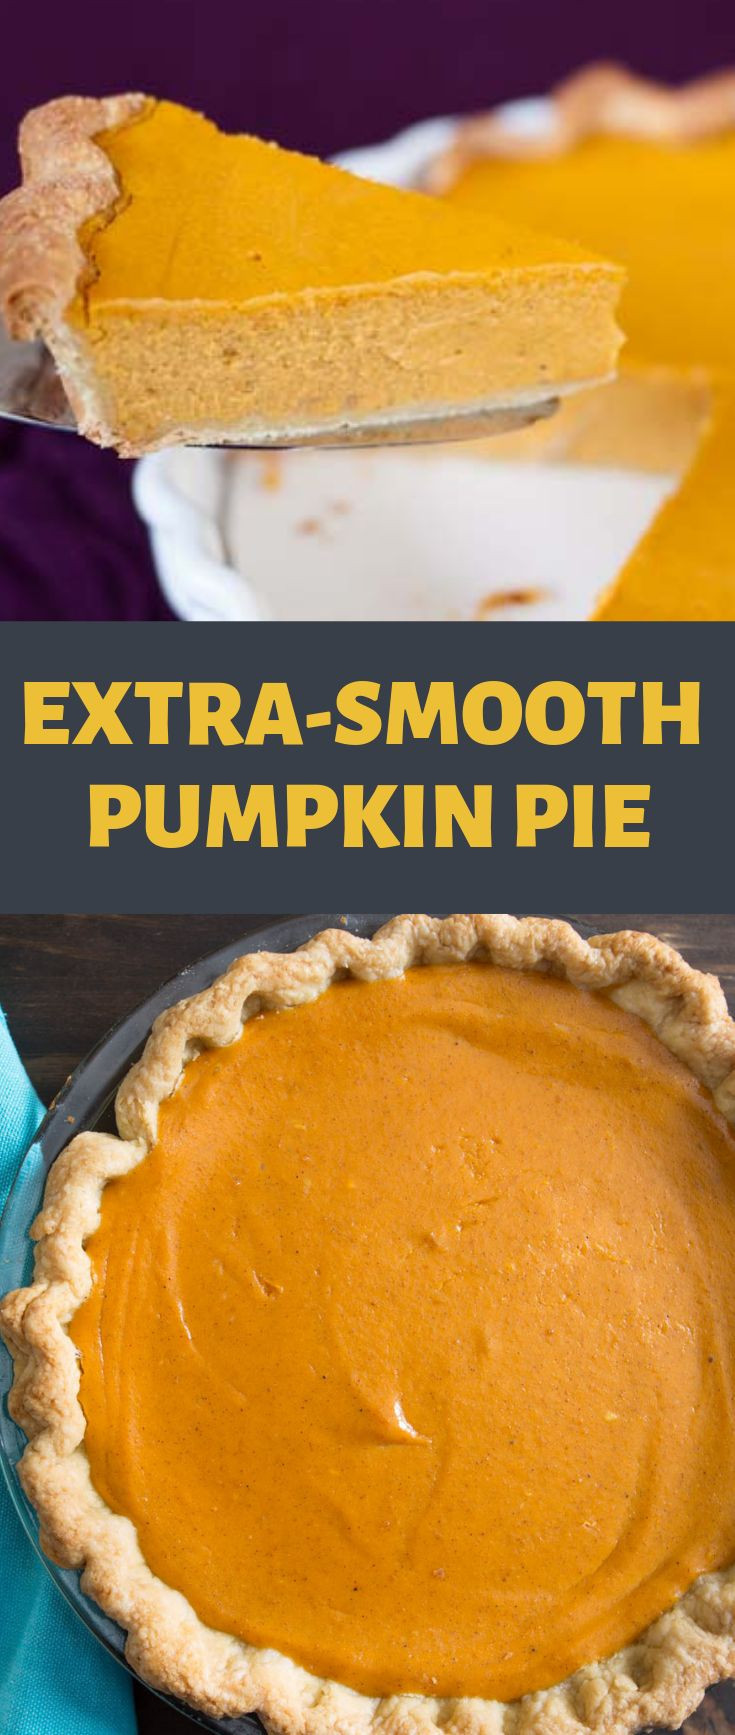 Popeyes Turkey Thanksgiving 2019
 Extra Smooth Pumpkin Pie Recipe in 2019